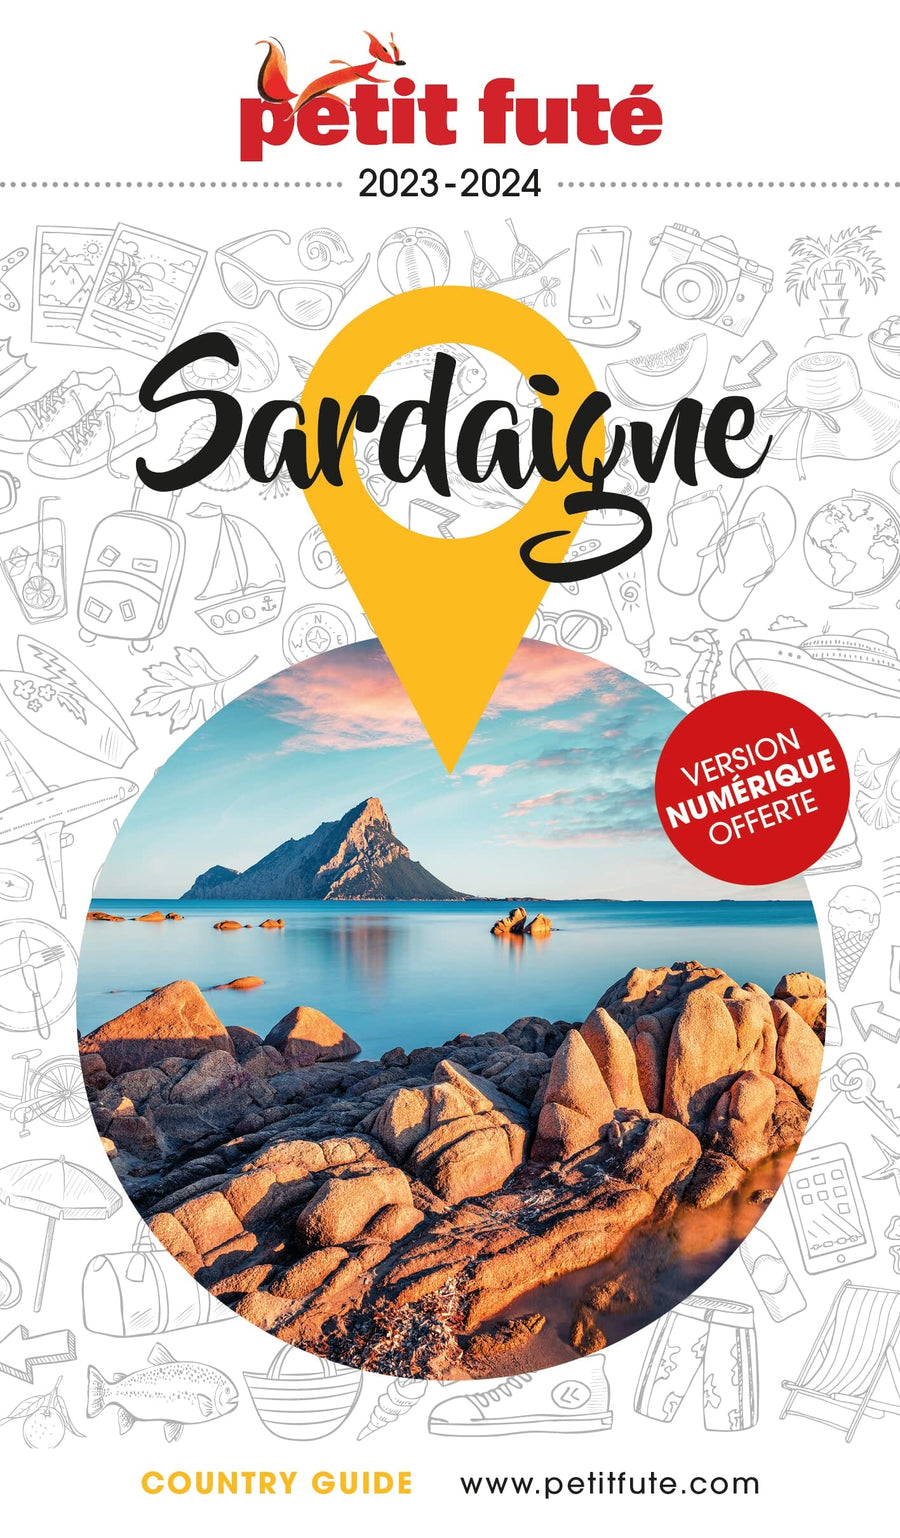 Guide de voyage - Sardaigne 2023/24 | Petit Futé guide de voyage Petit Futé 